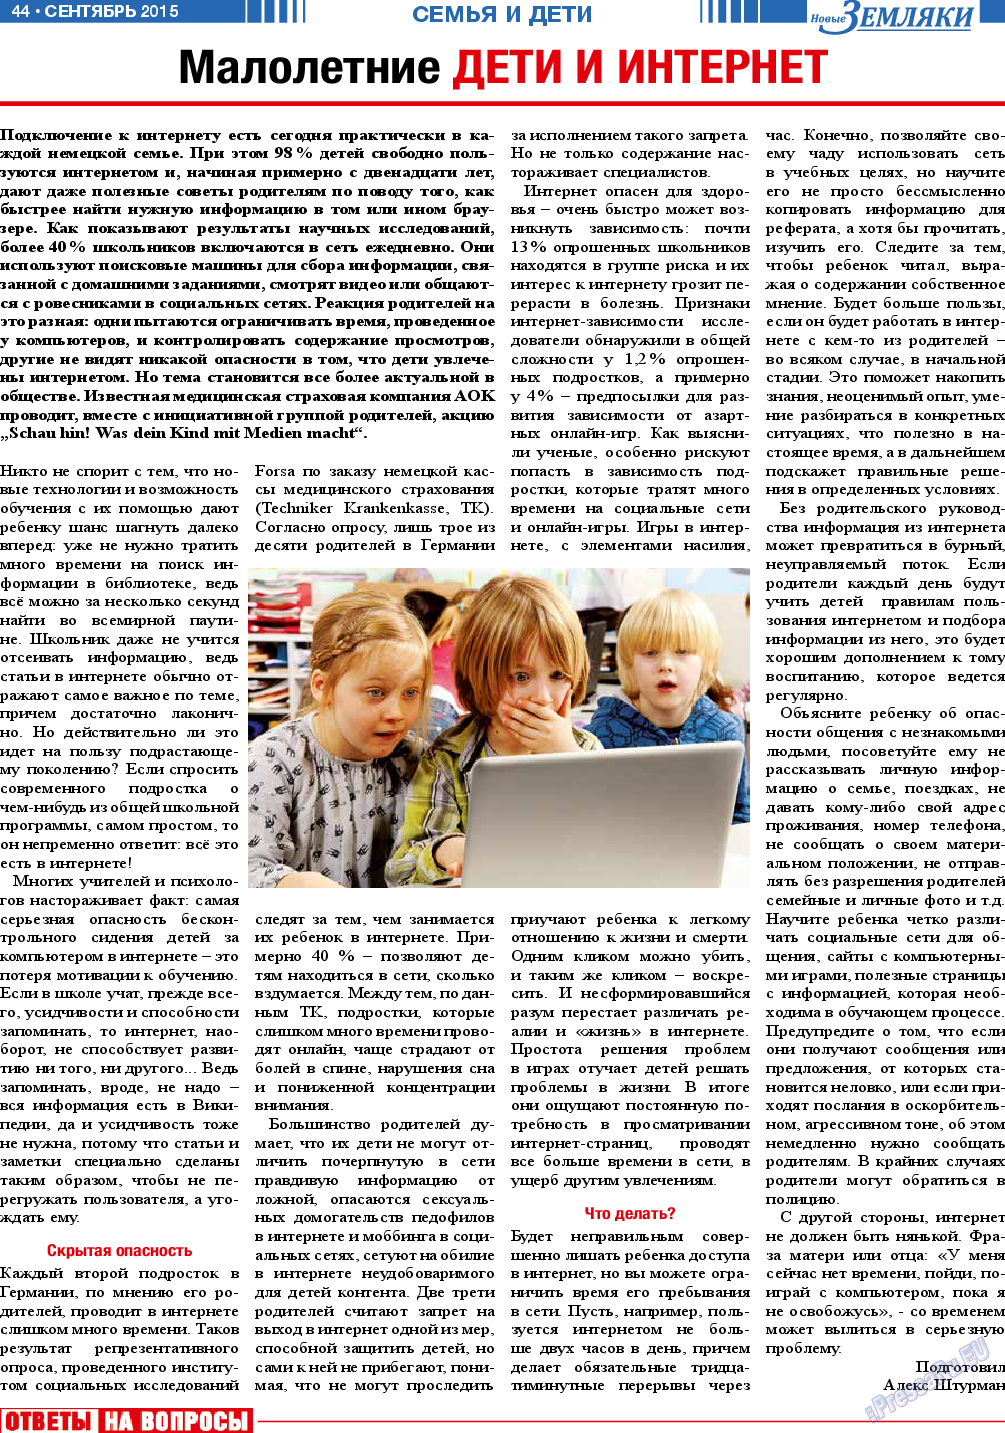 Новые Земляки, газета. 2015 №9 стр.44